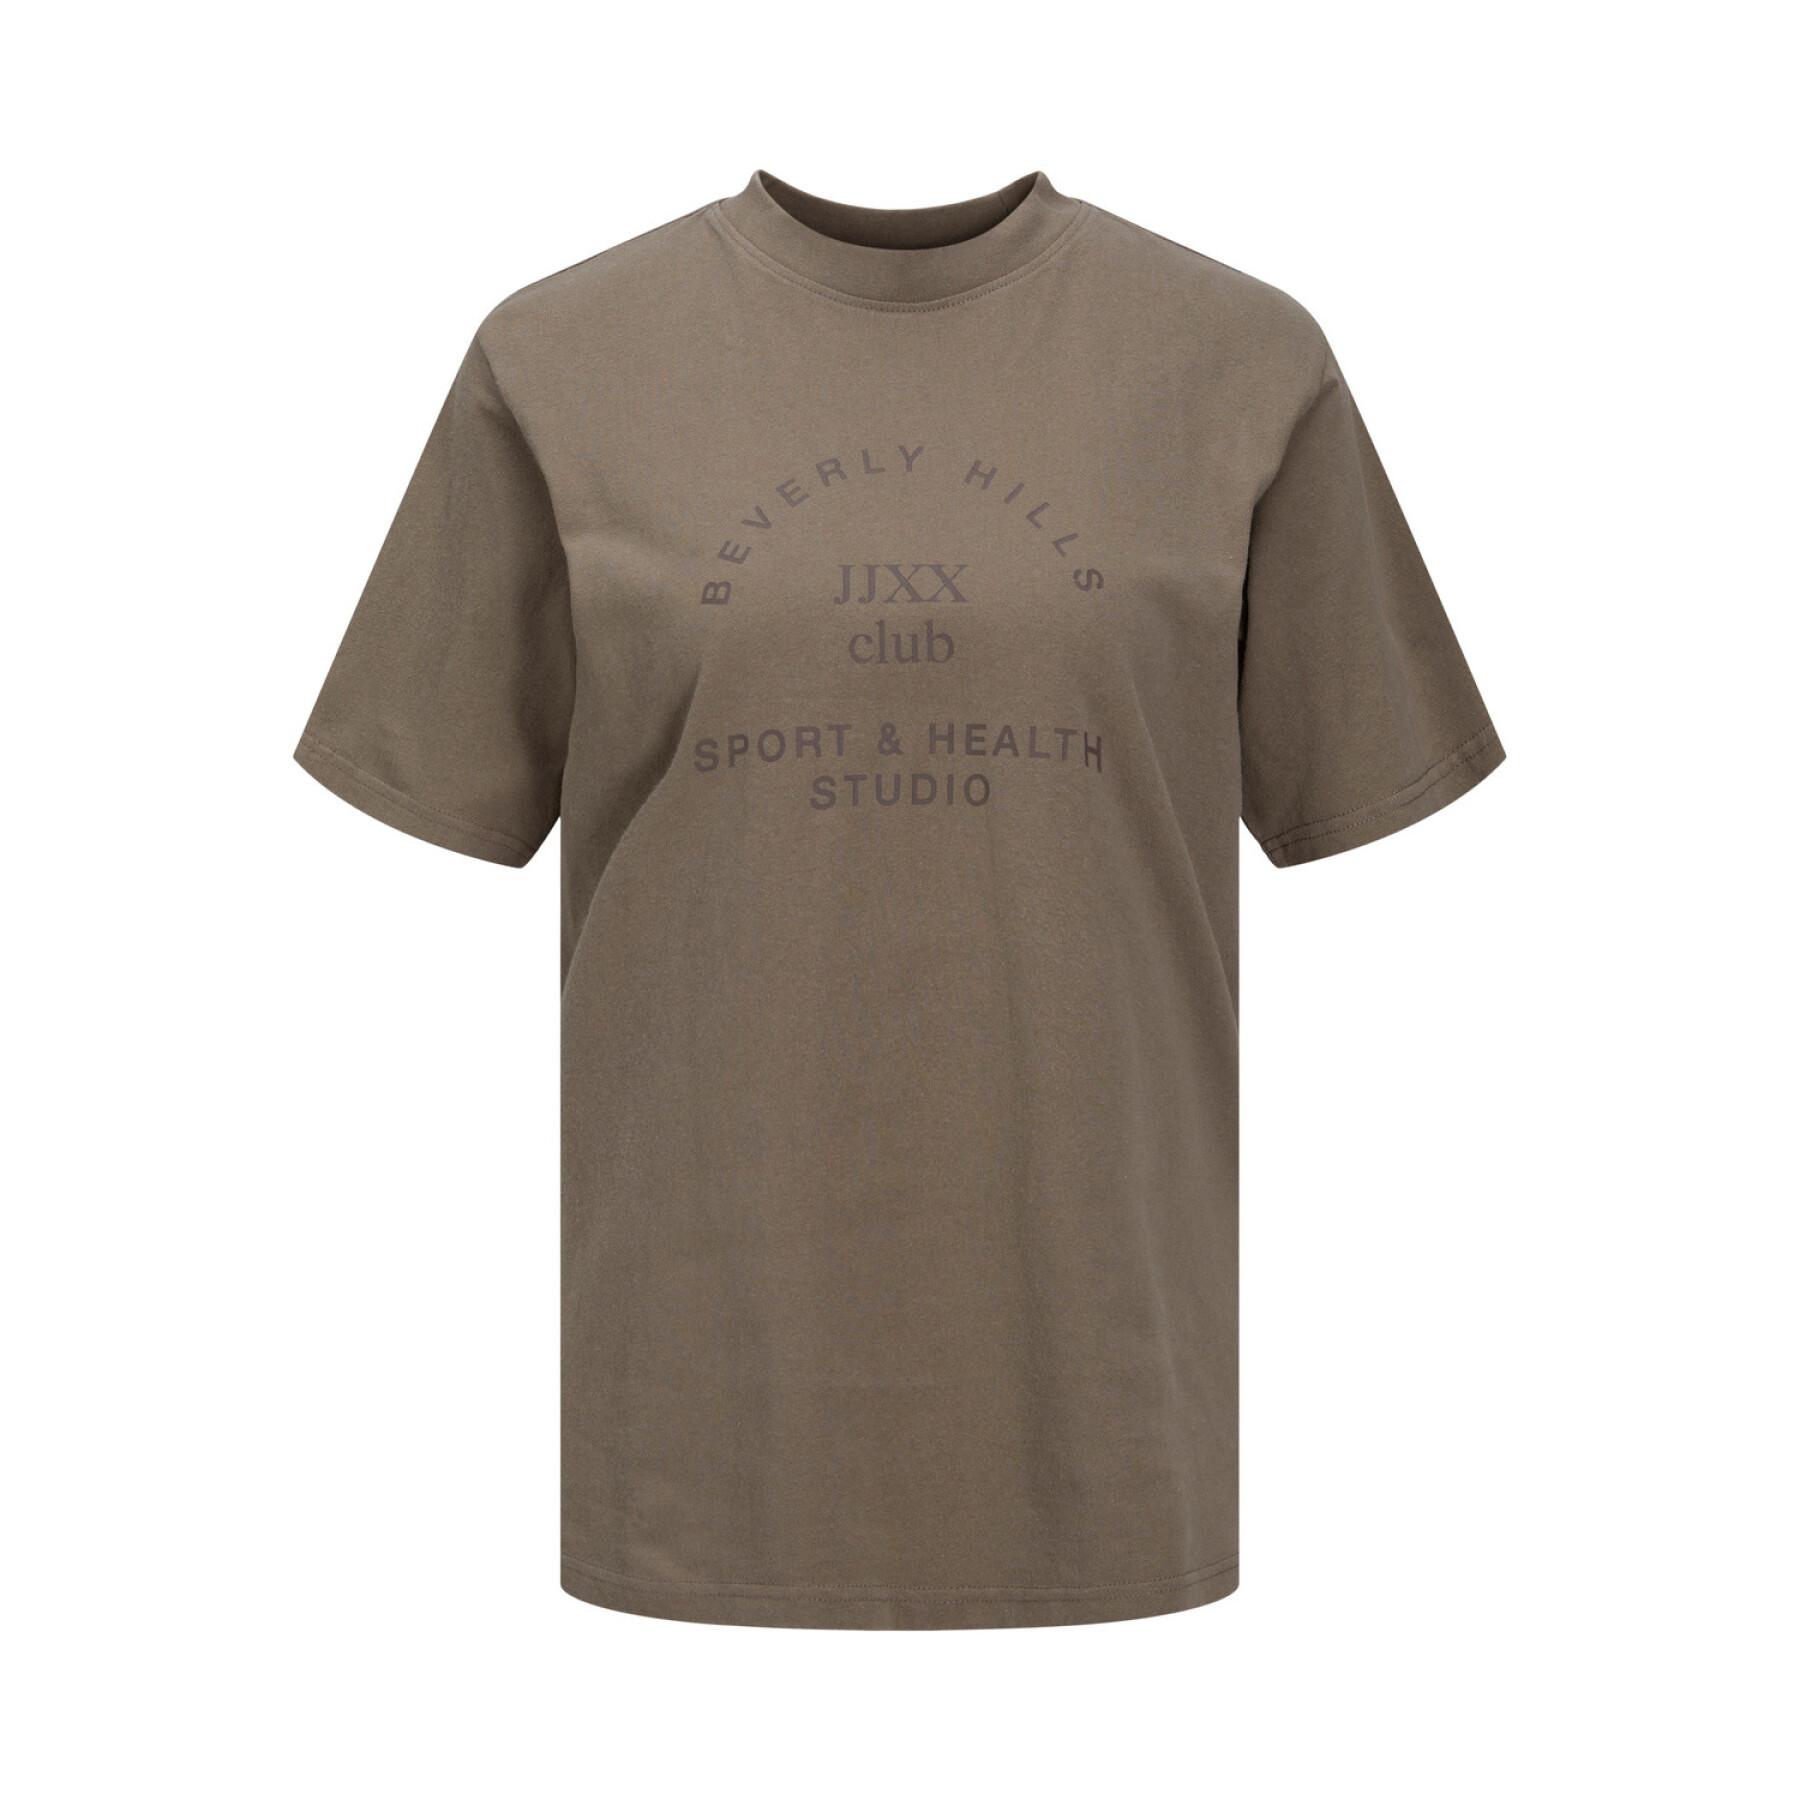 Women's T-shirt JJXX Bea Relaxed Vint Noos